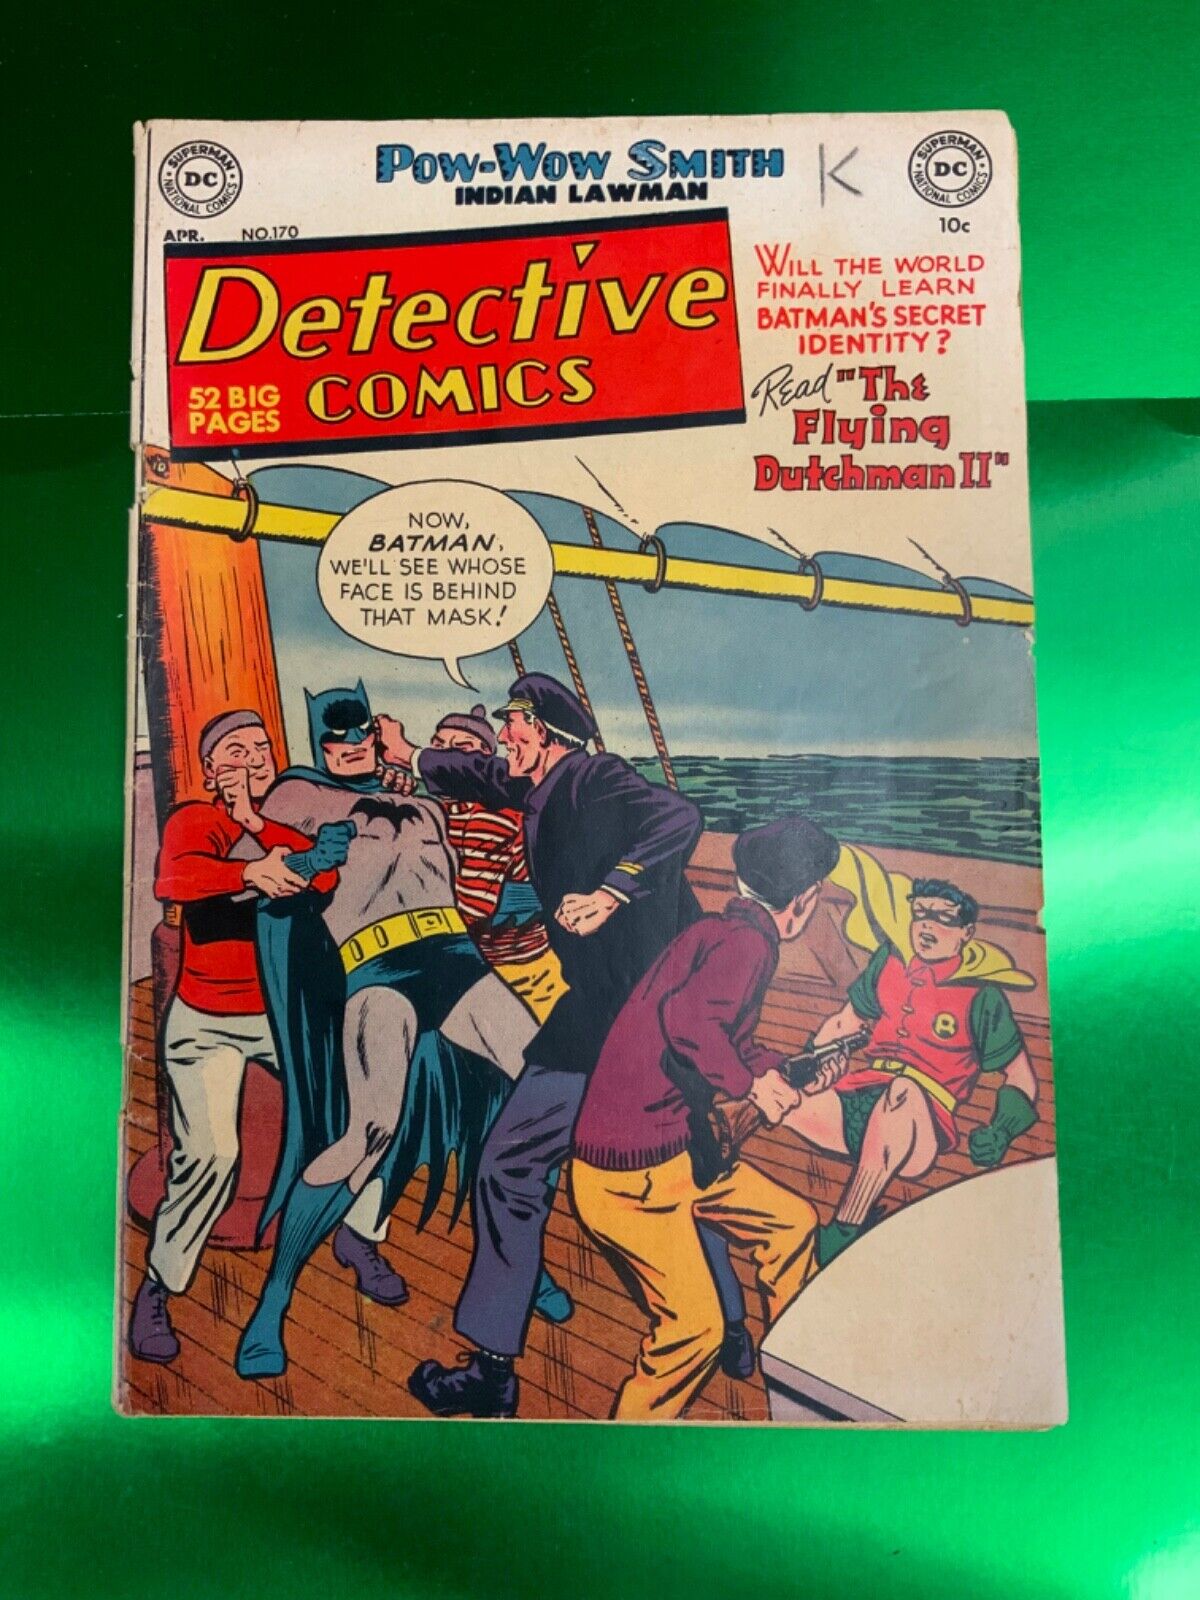 DETECTIVE COMICS #170 1951 Robotman Batman Robin DC Win Mortimer Cover 